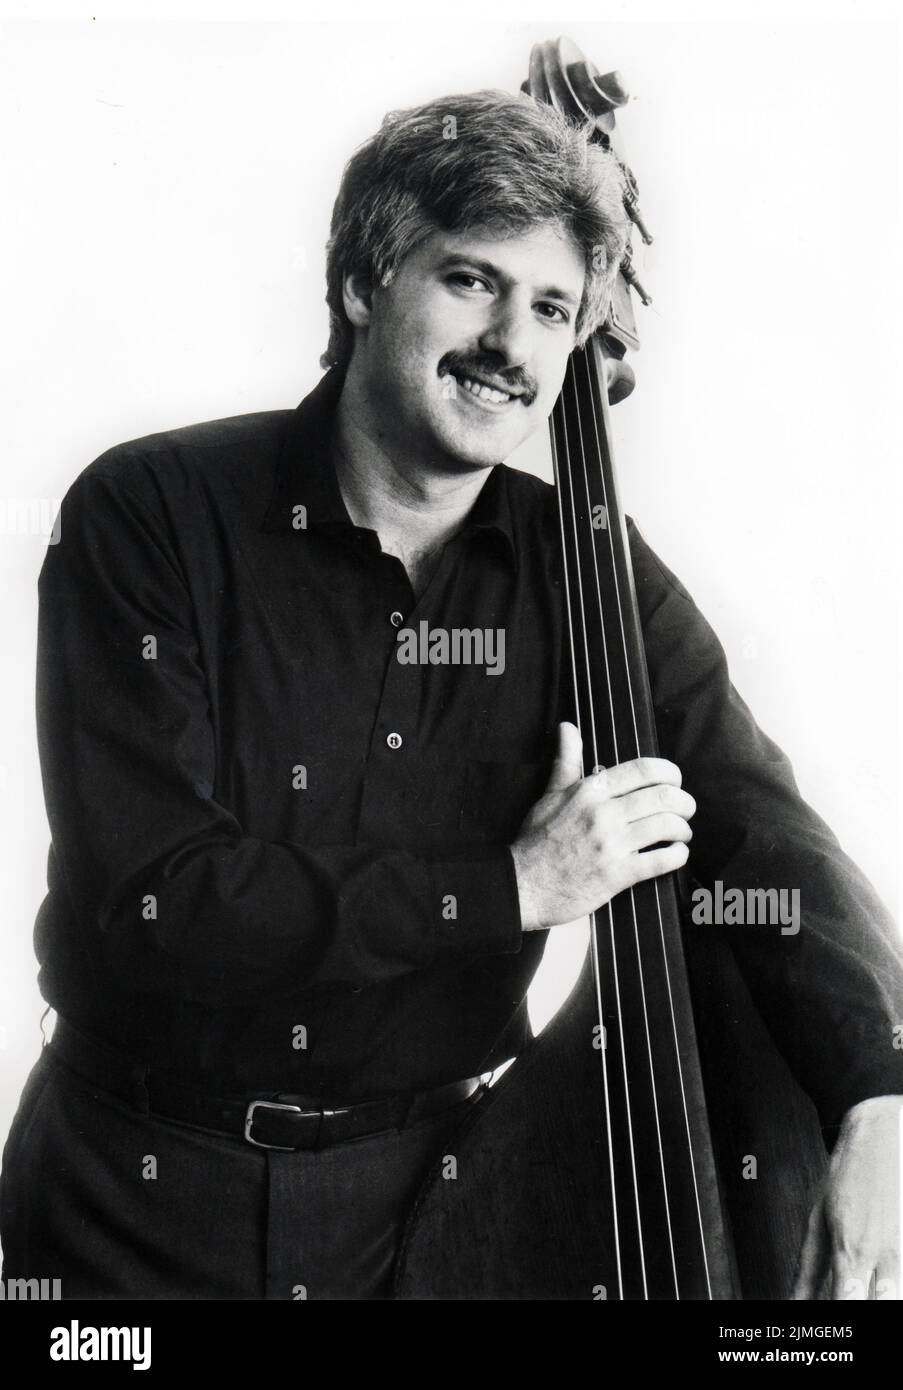 Posado retrato del bajista de jazz Harvie S aka Harvie Swartz con su instrumento, en Manhattan alrededor de 1985. Foto de stock